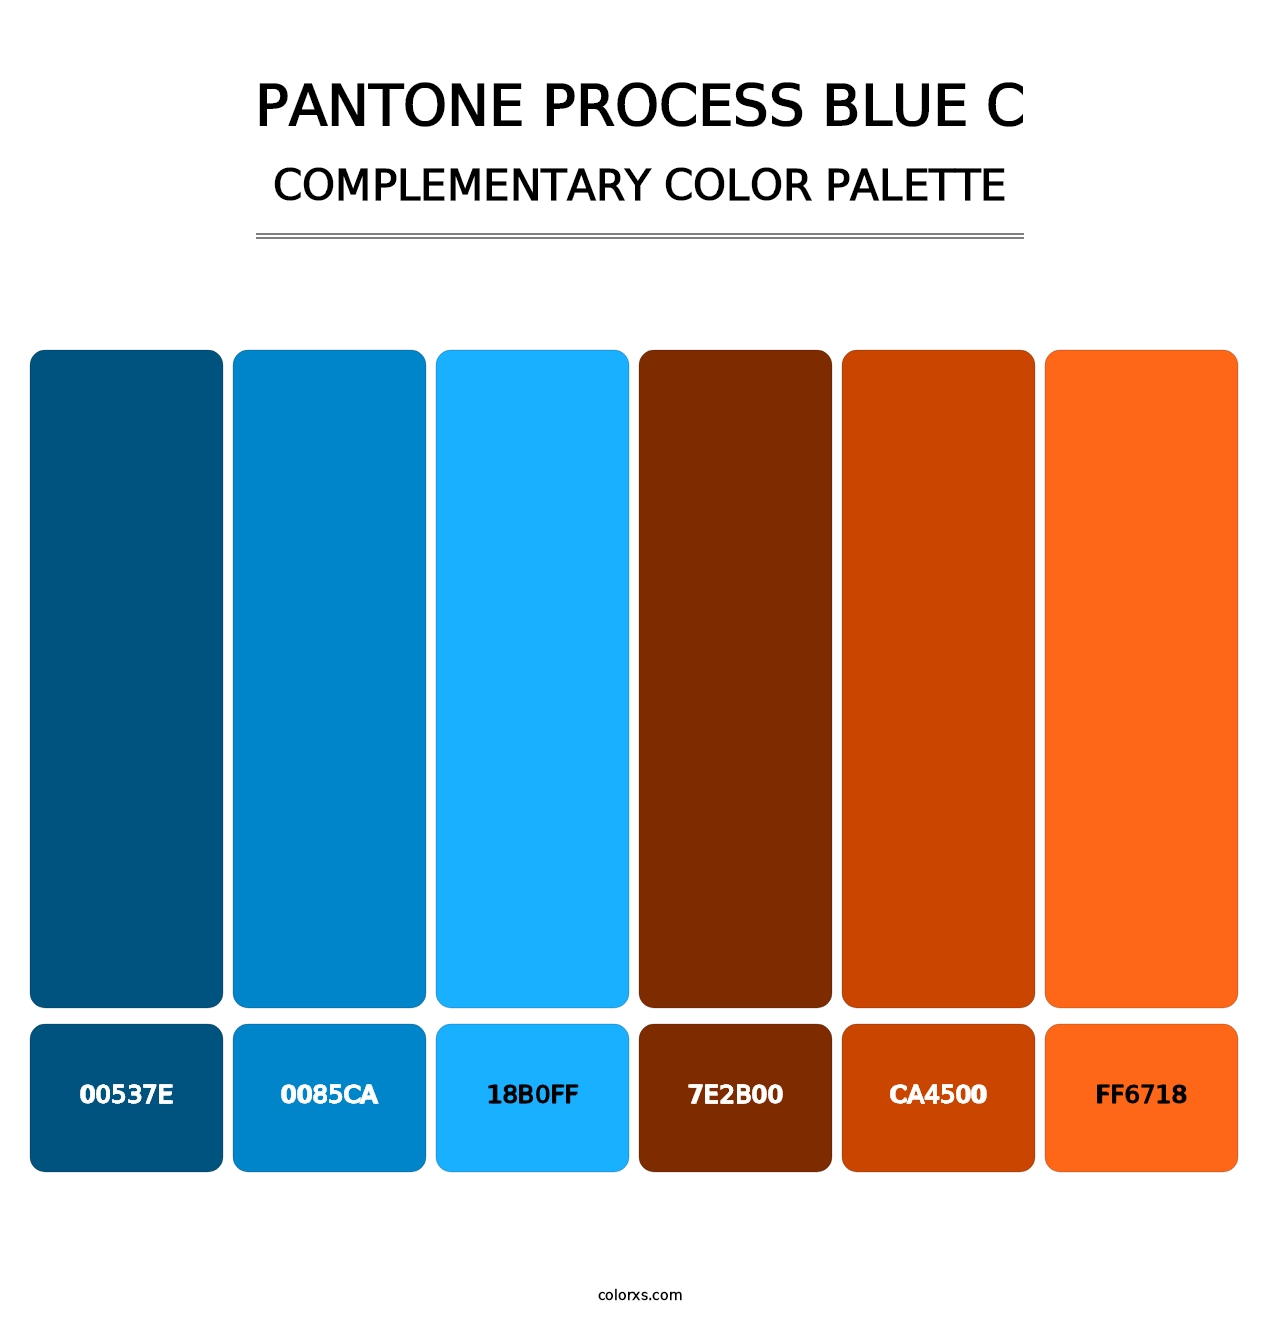 PANTONE Process Blue C - Complementary Color Palette